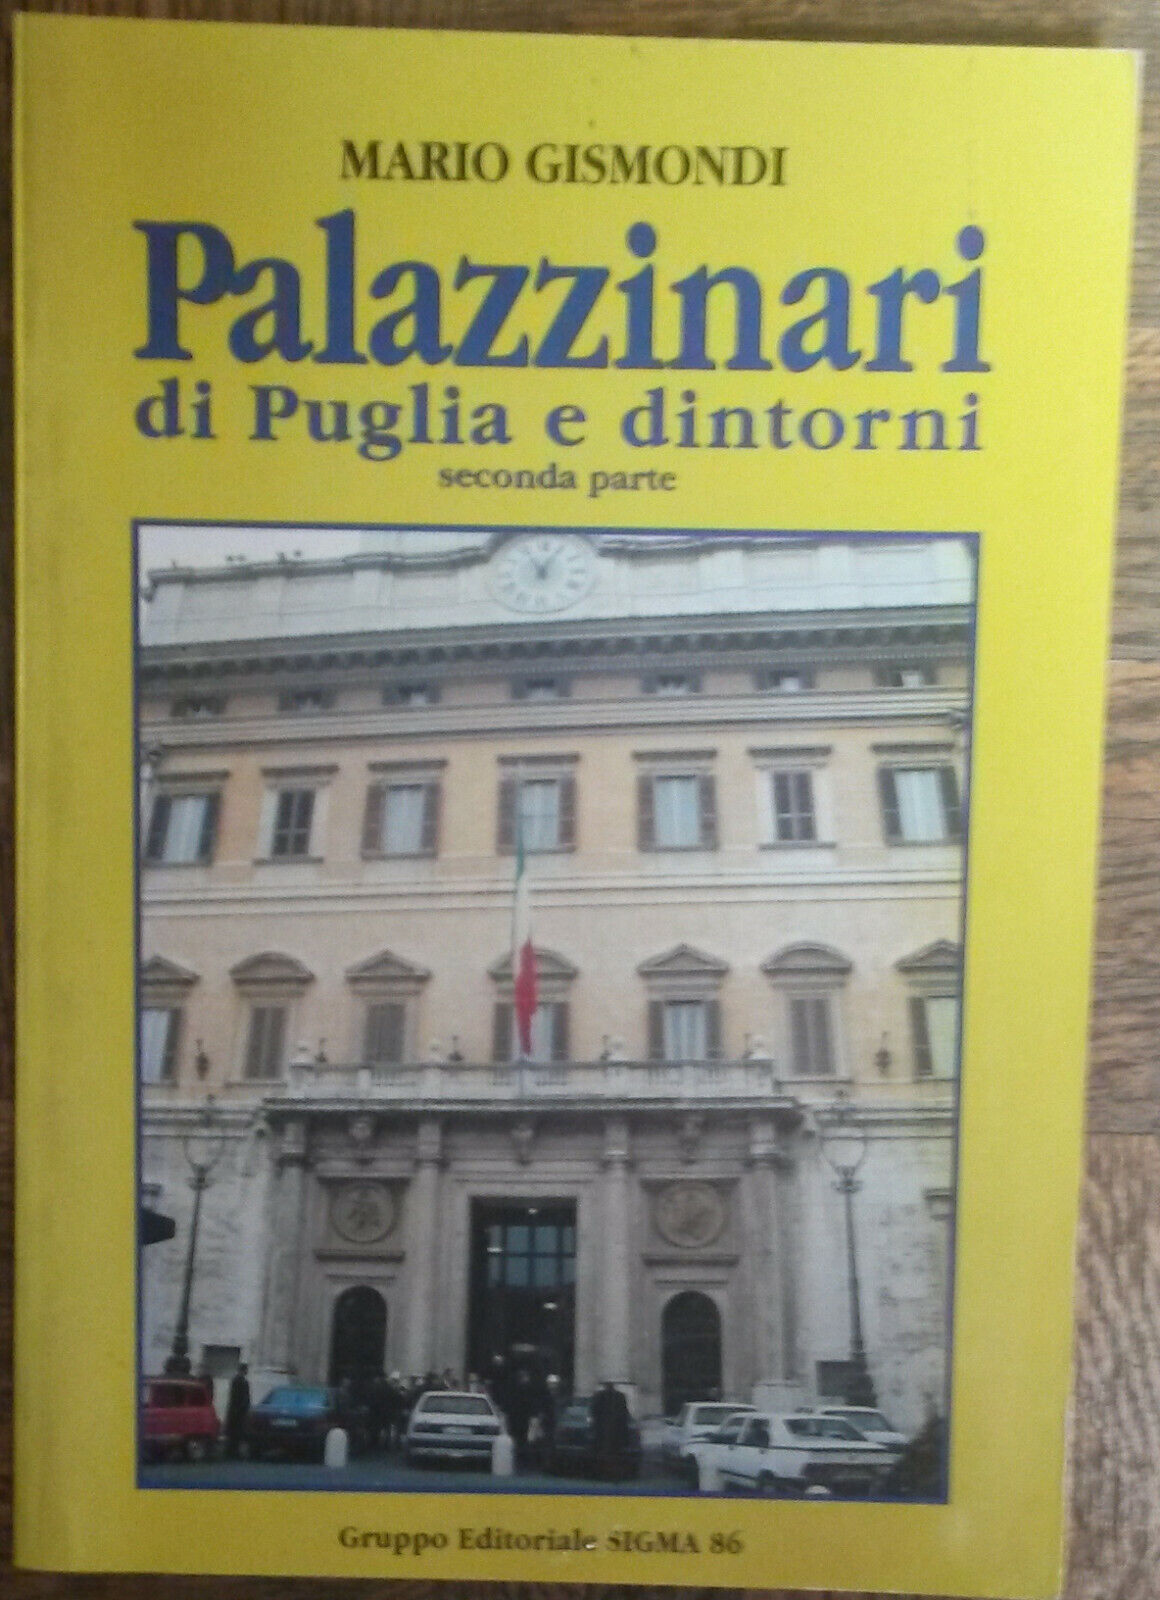 Palazzinari di Puglia e dintorni-Mario Gismondi-Gruppo Editoriale SIGMA86,1996-R